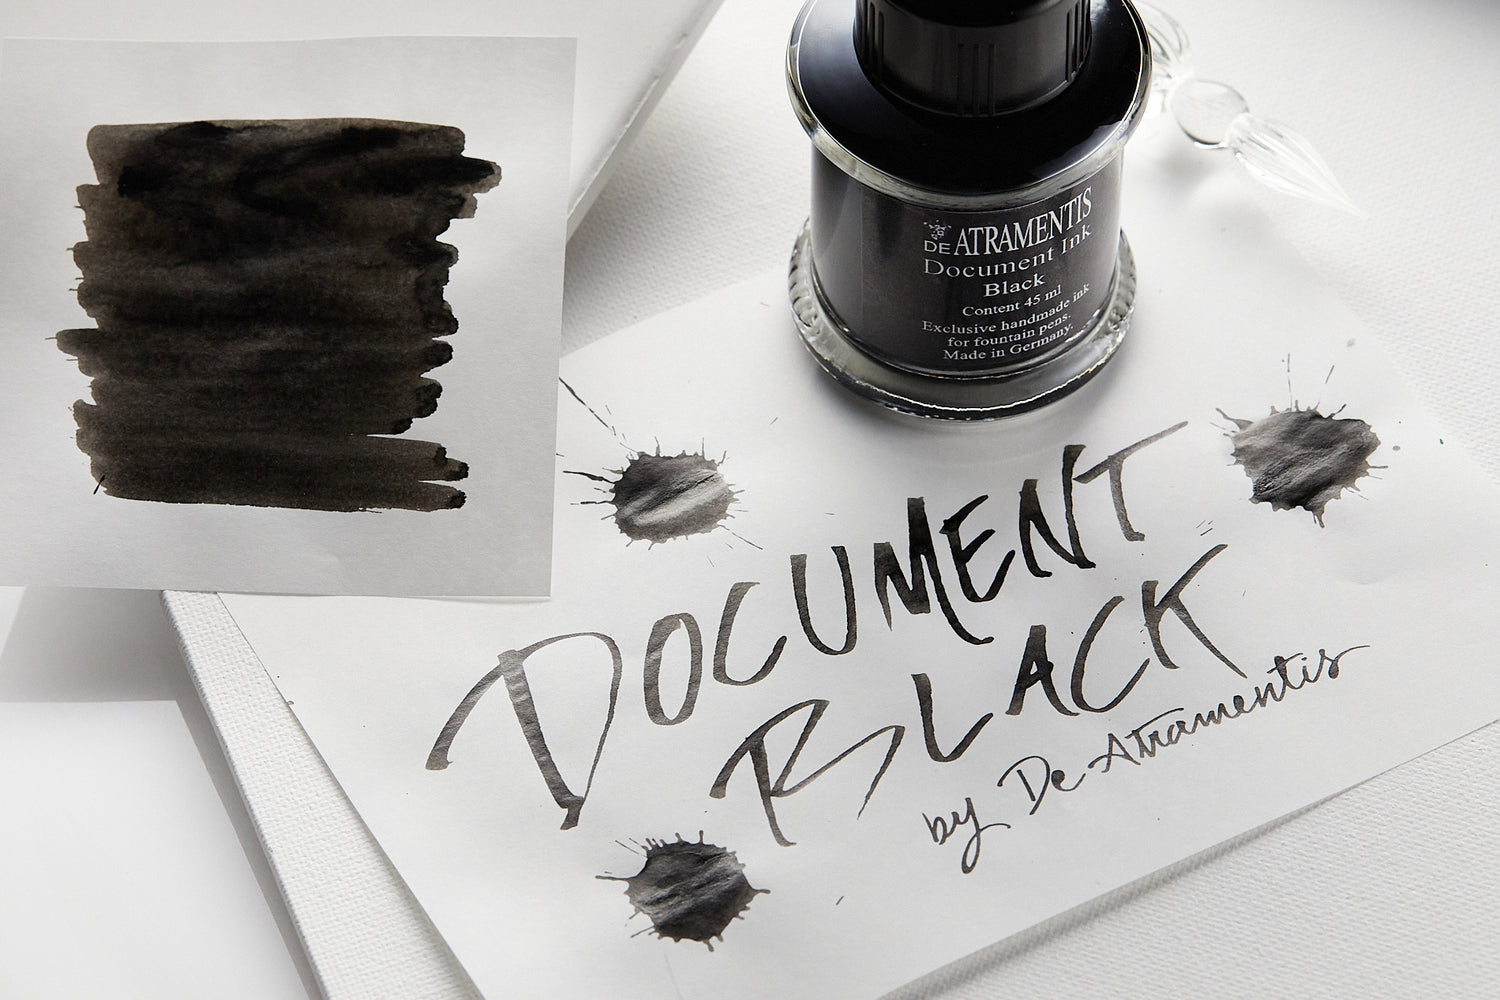 DE ATRAMENTIS Archive Ink 45mL - Black – SKETCHLANDIA